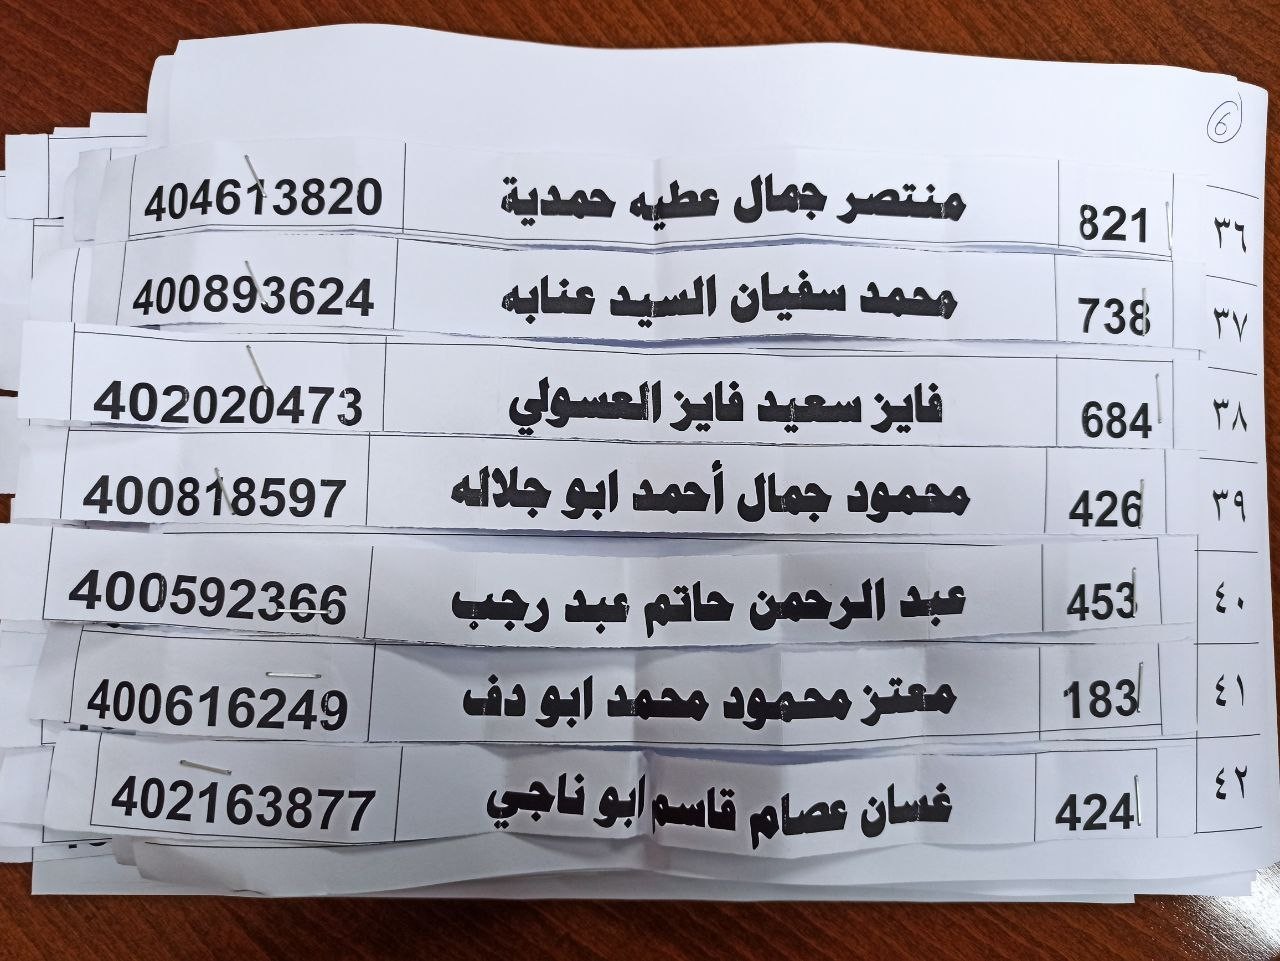 بالأسماء: الإعلان عن قرعة اختيار المستفيدين من القرض الحسن للزواج في غزّة